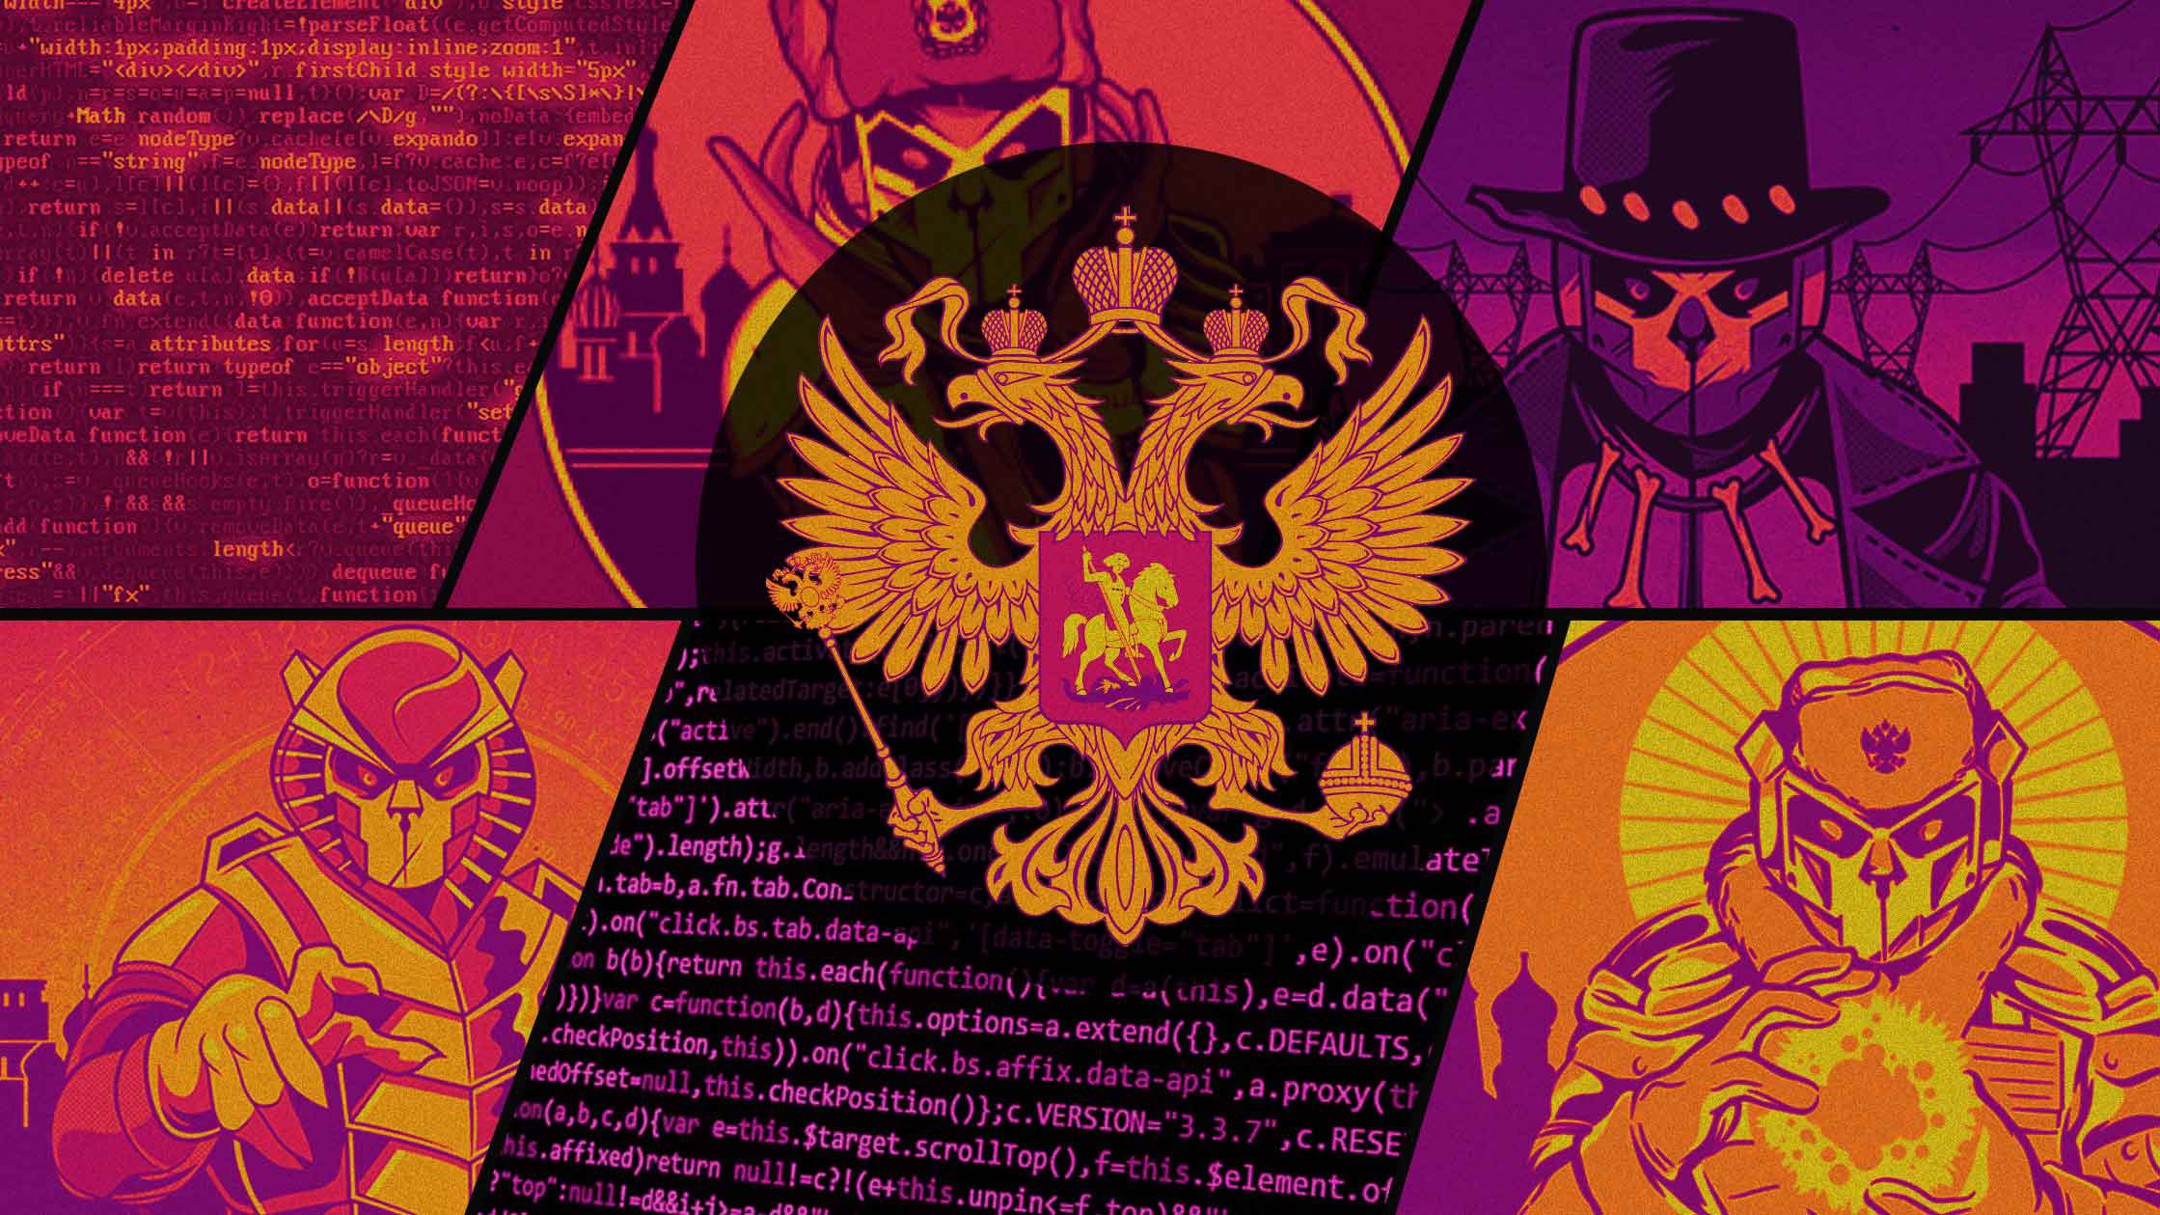 Dailystorm - Daily Storm публикует карту «Степи гризли»: связей самых известных пророссийских хакерских группировок со спецслужбами РФ